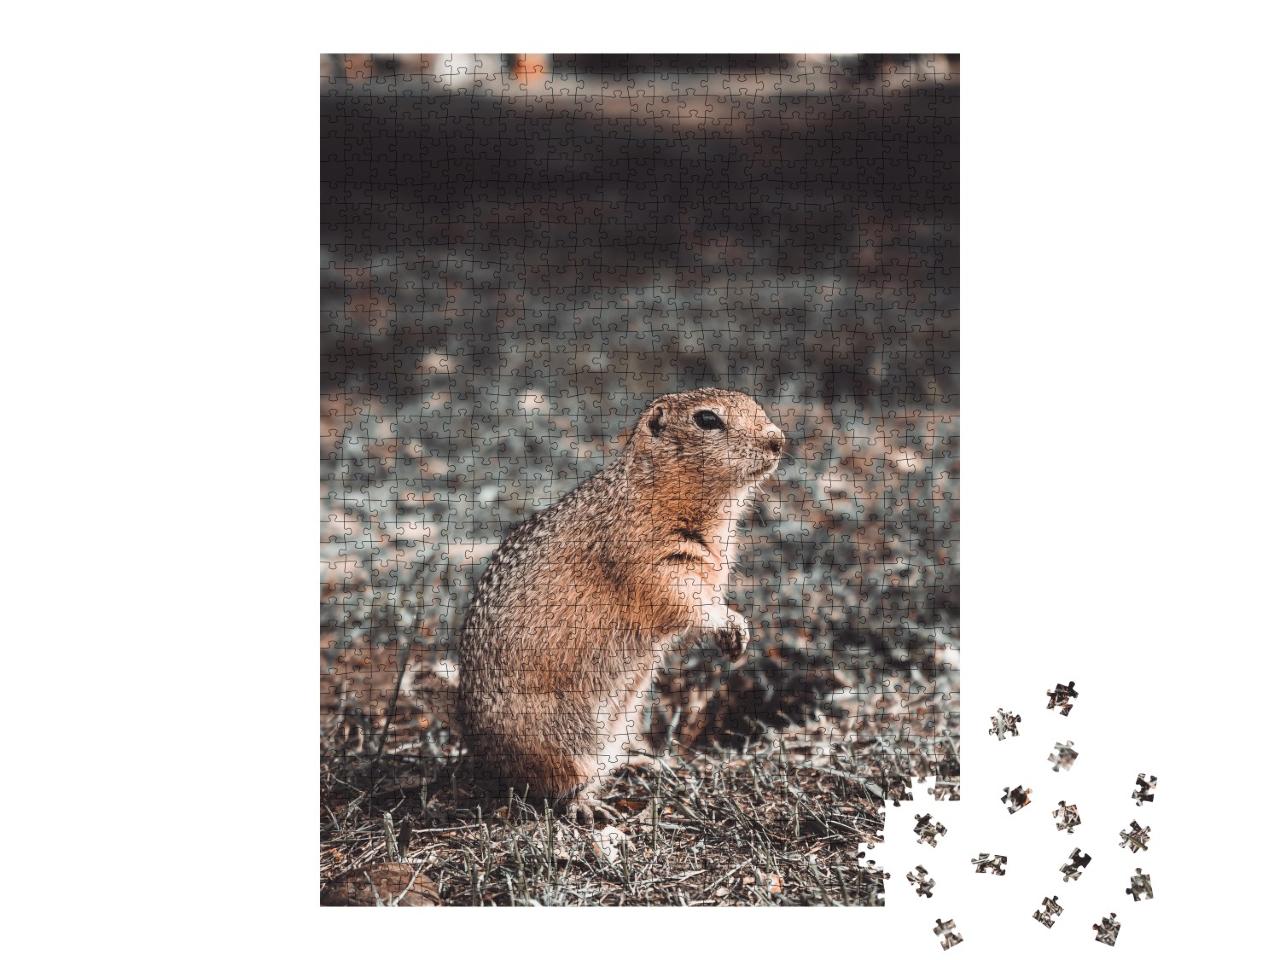 Puzzle de 1000 pièces « Rat de poche se nourrissant dans son trou dans une clairière, automne »